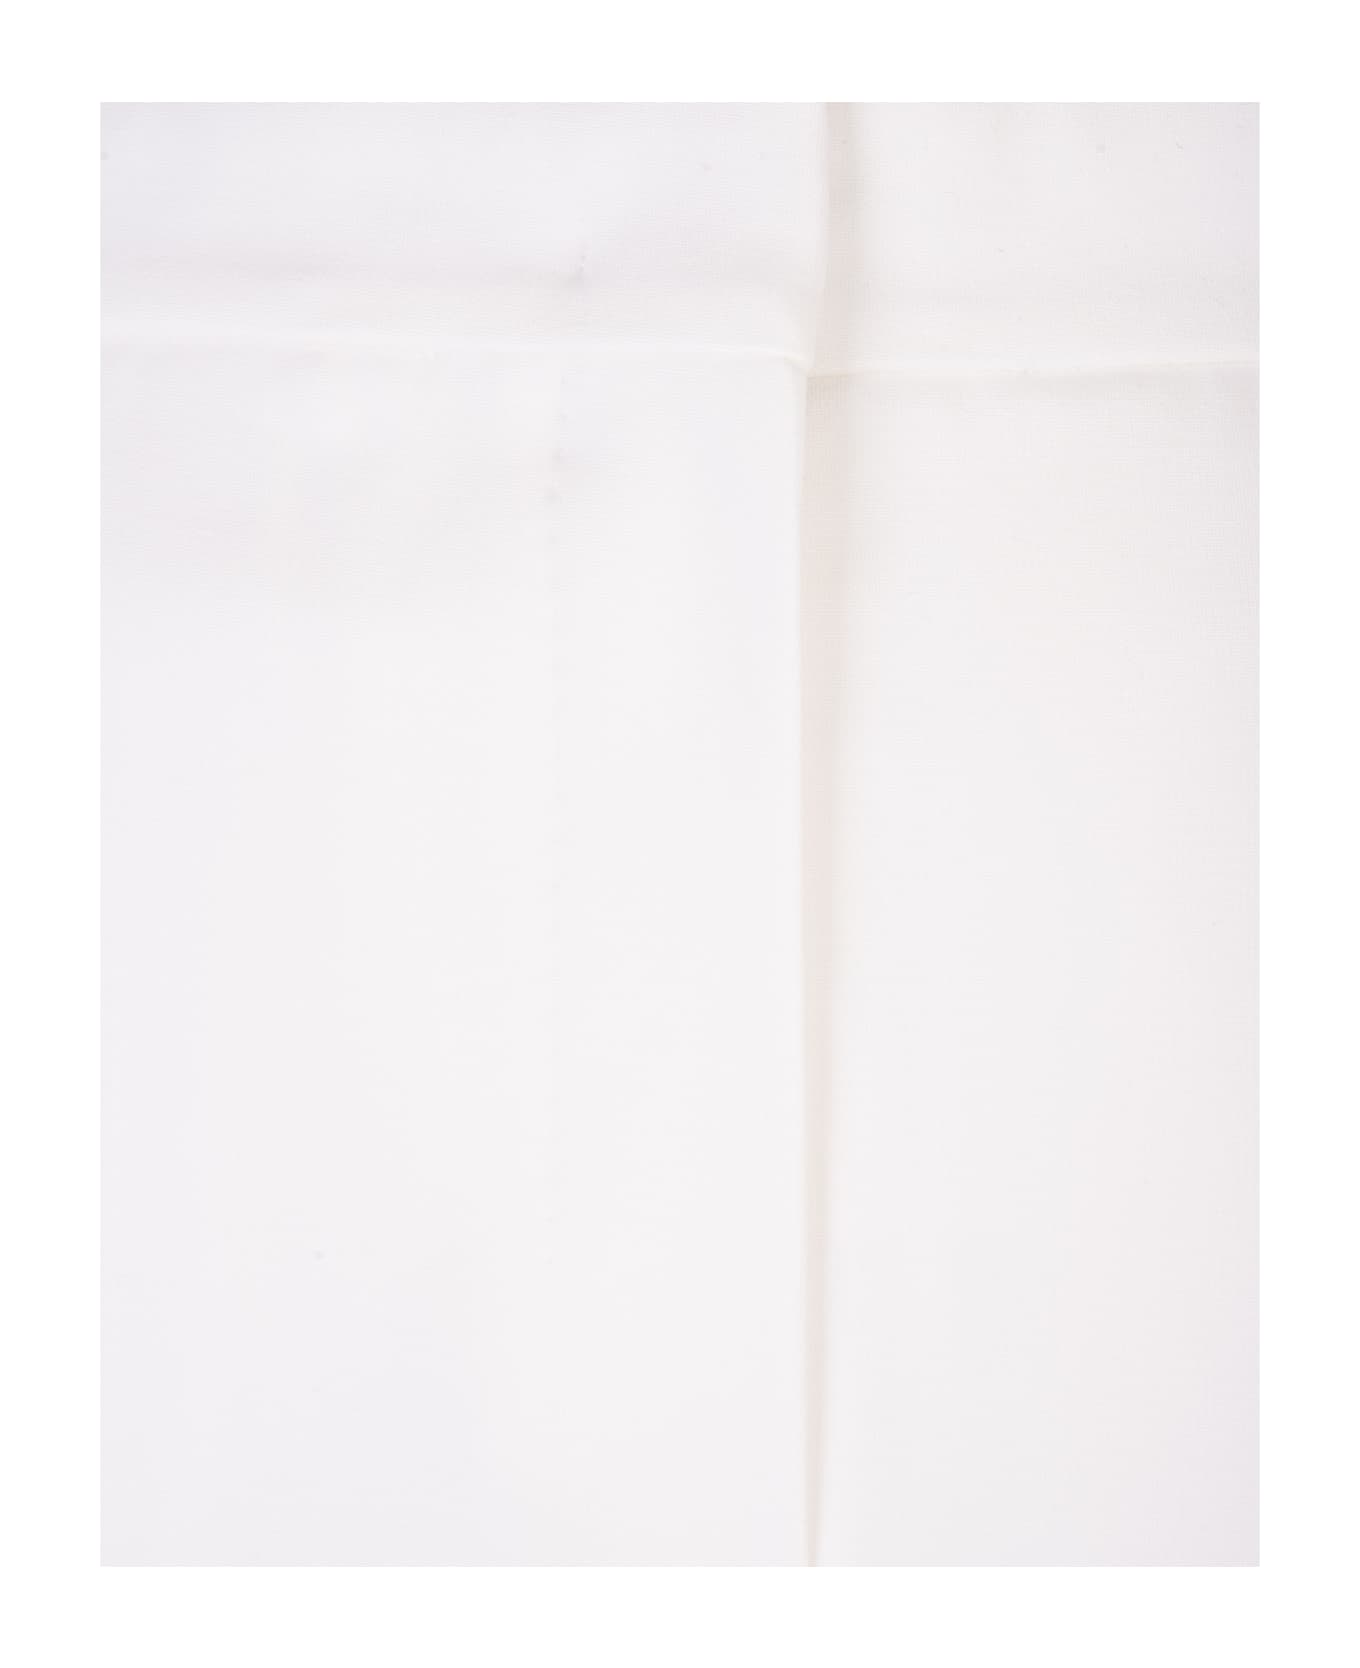 Max Mara Woman Tronto Mono Trousers In White Viscose Jersey - White